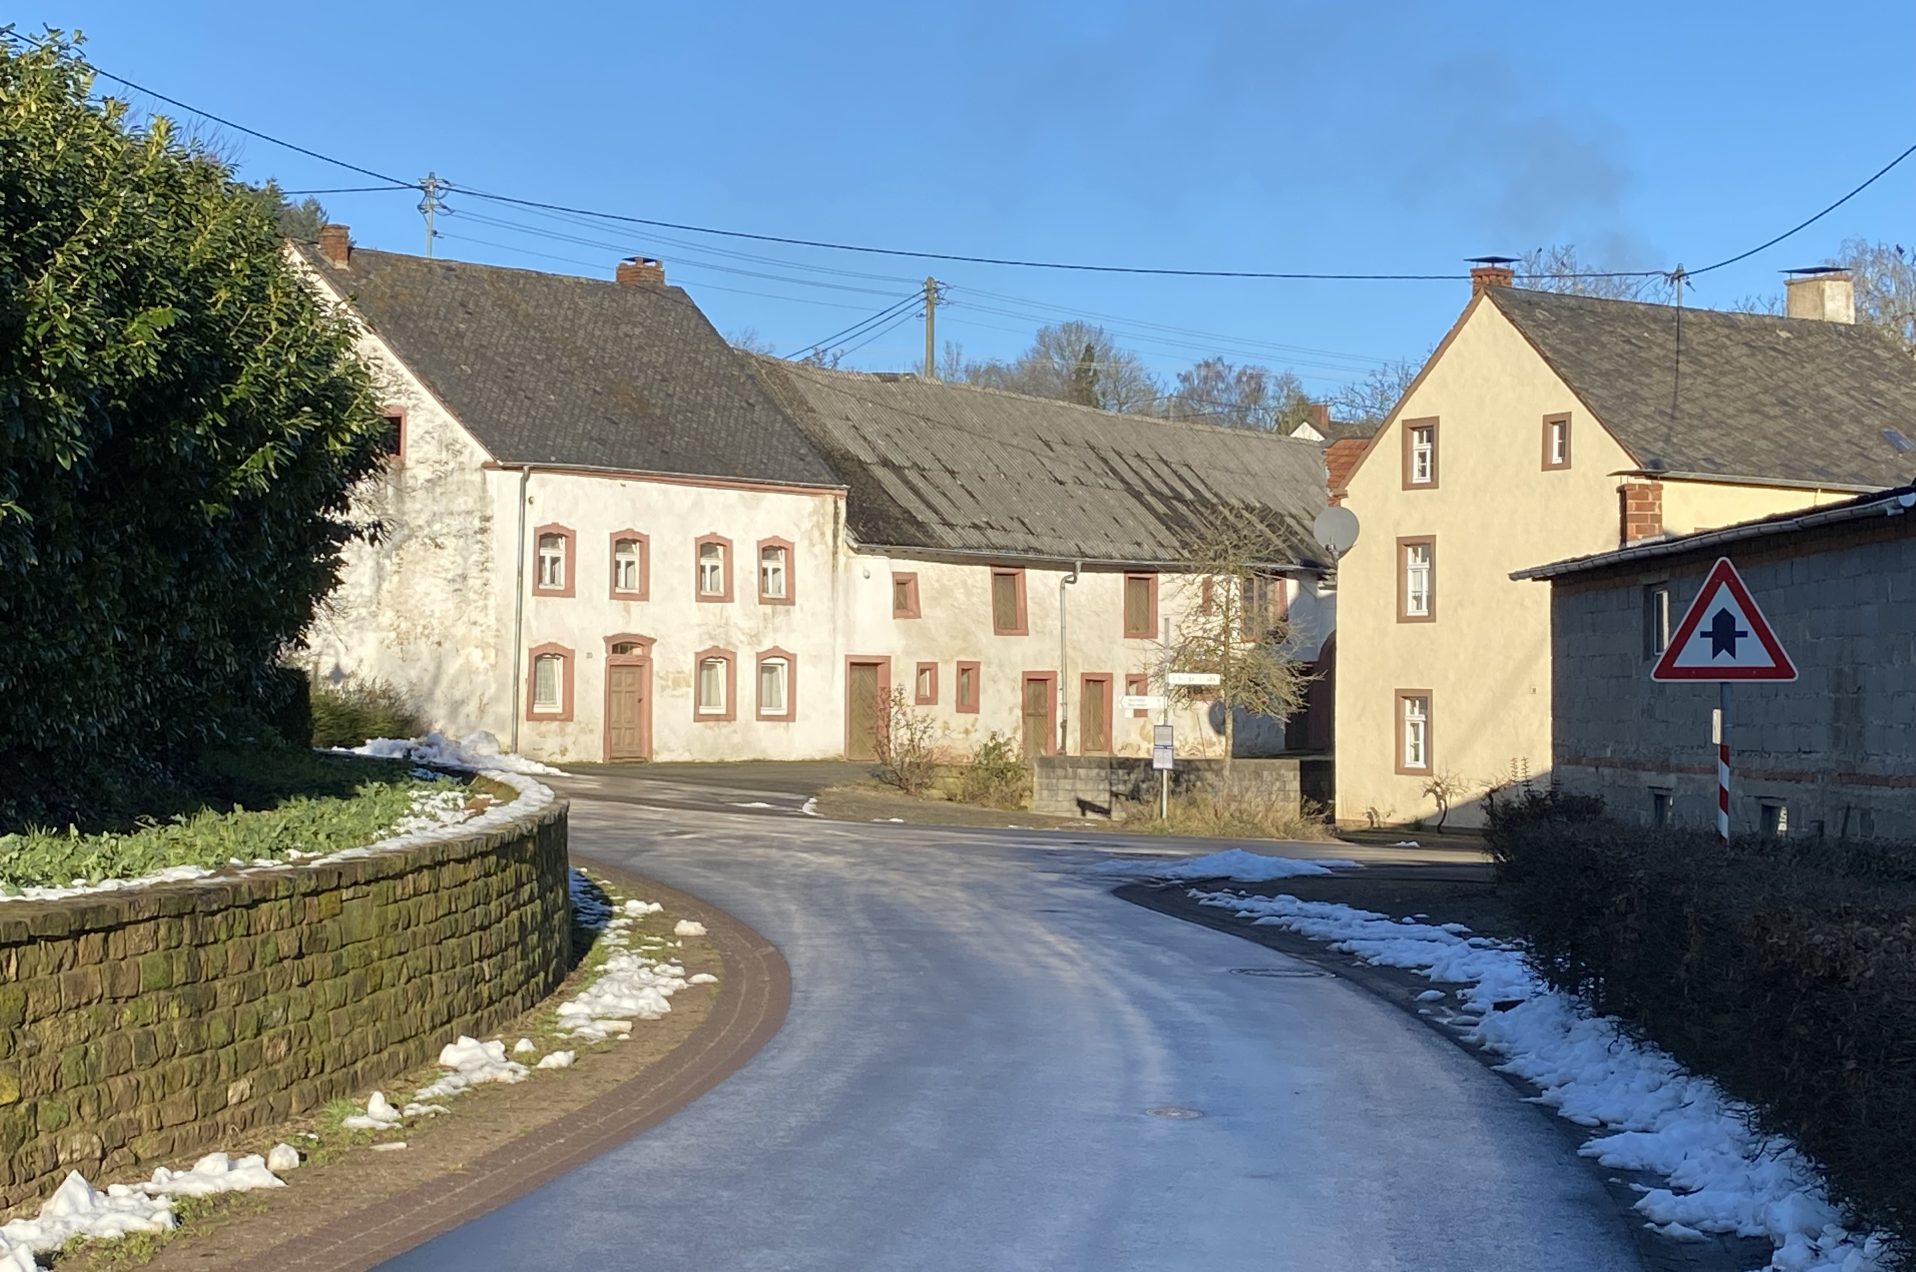 Straße im Dorf mit Häusern im Hintergrund